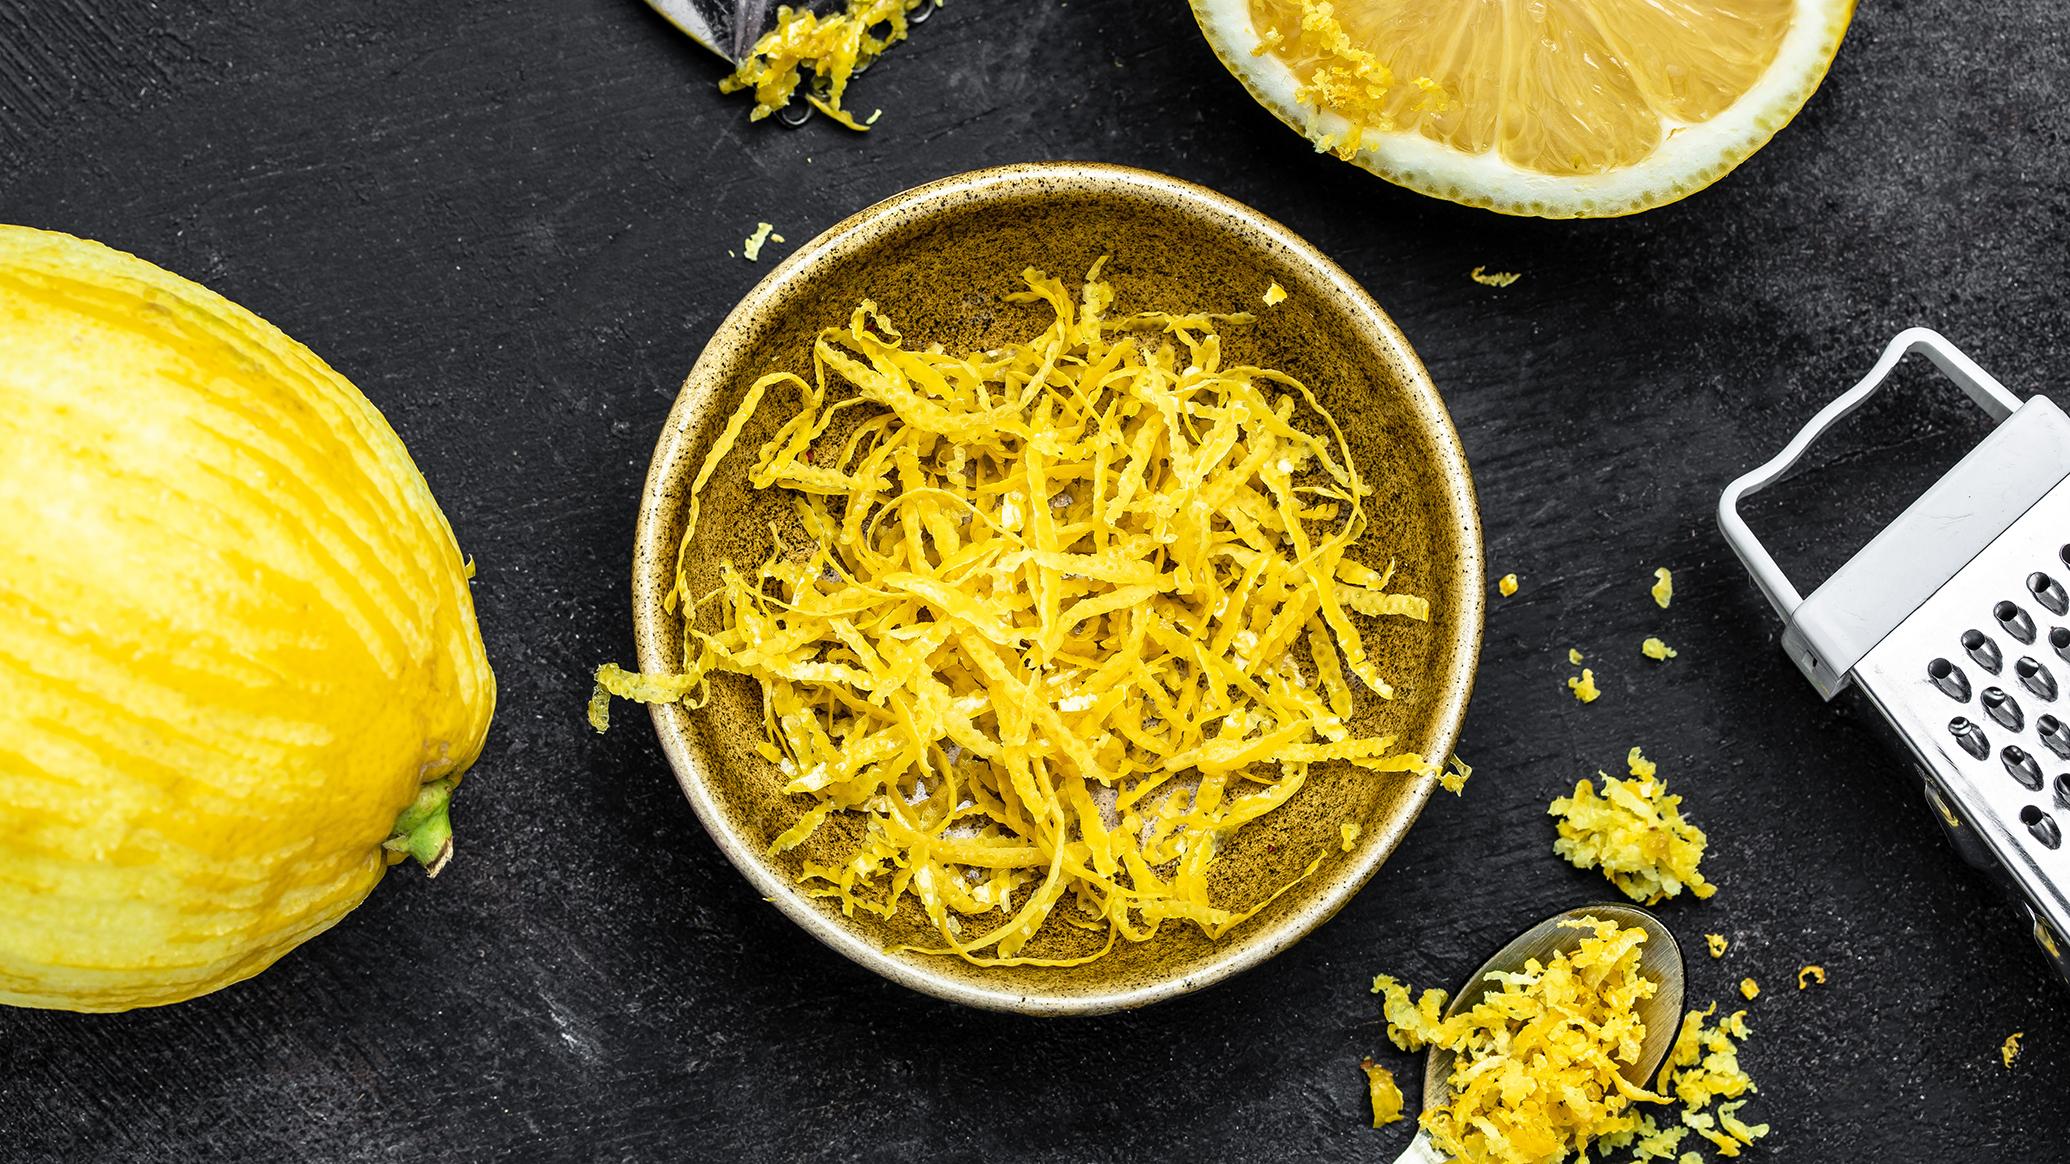 Muista pestä sitruuna hyvin ennen kuin käytät kuorta juomiin ja erilaisiin ruokiin. (Kuva: Adobe Stock)